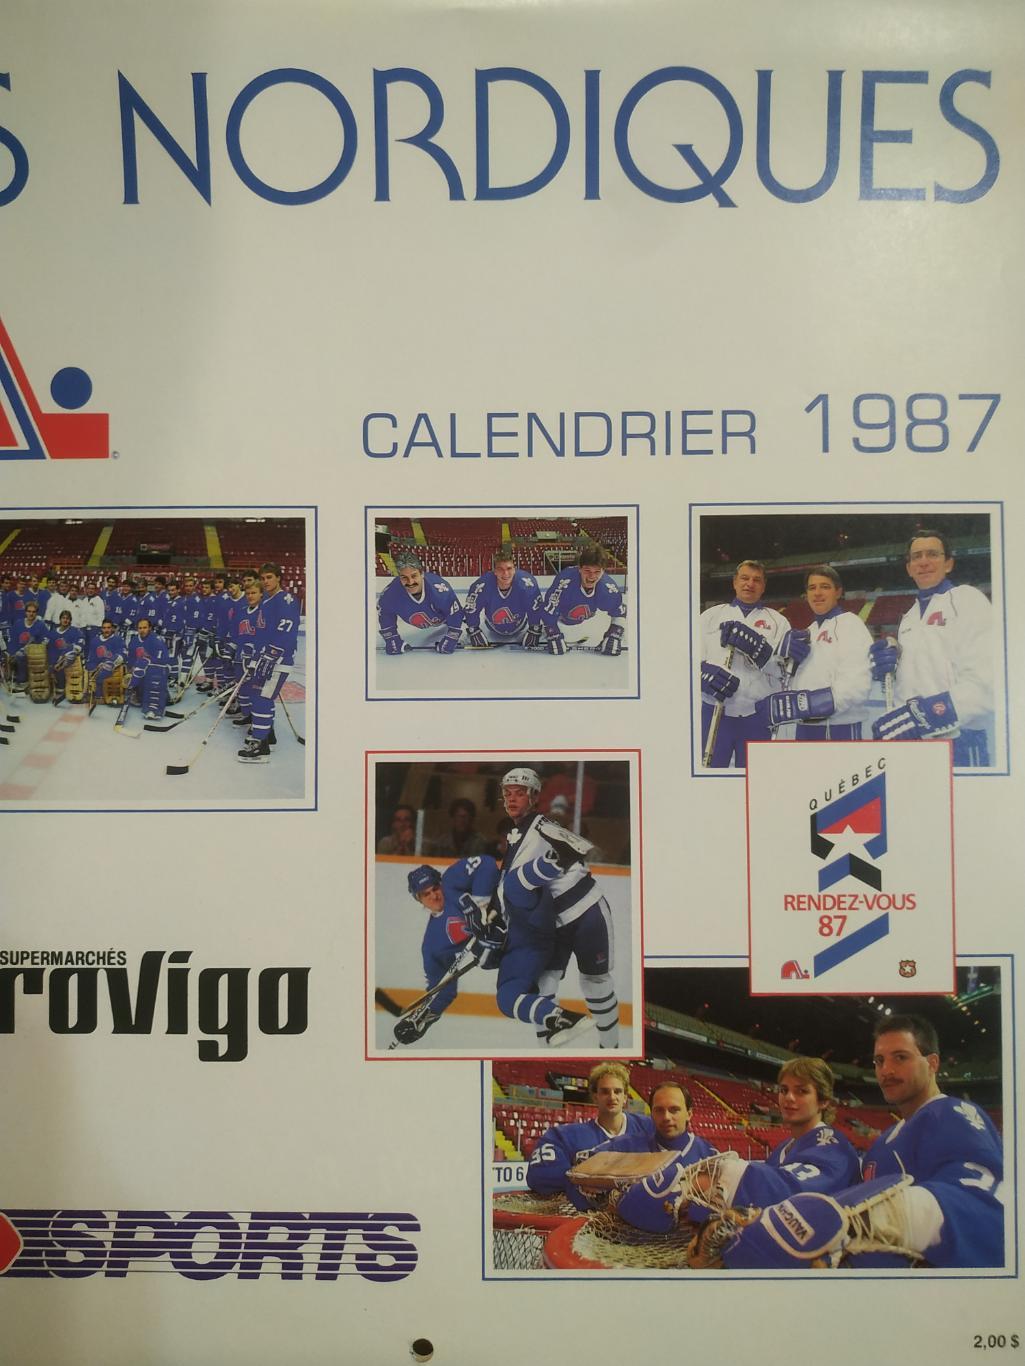 ХОККЕЙ КАЛЕНДАРЬ НХЛ КВЕБЕК НОРДИКС 1987 NHL LES NORDIQUES OFFICIAL CALENDAR